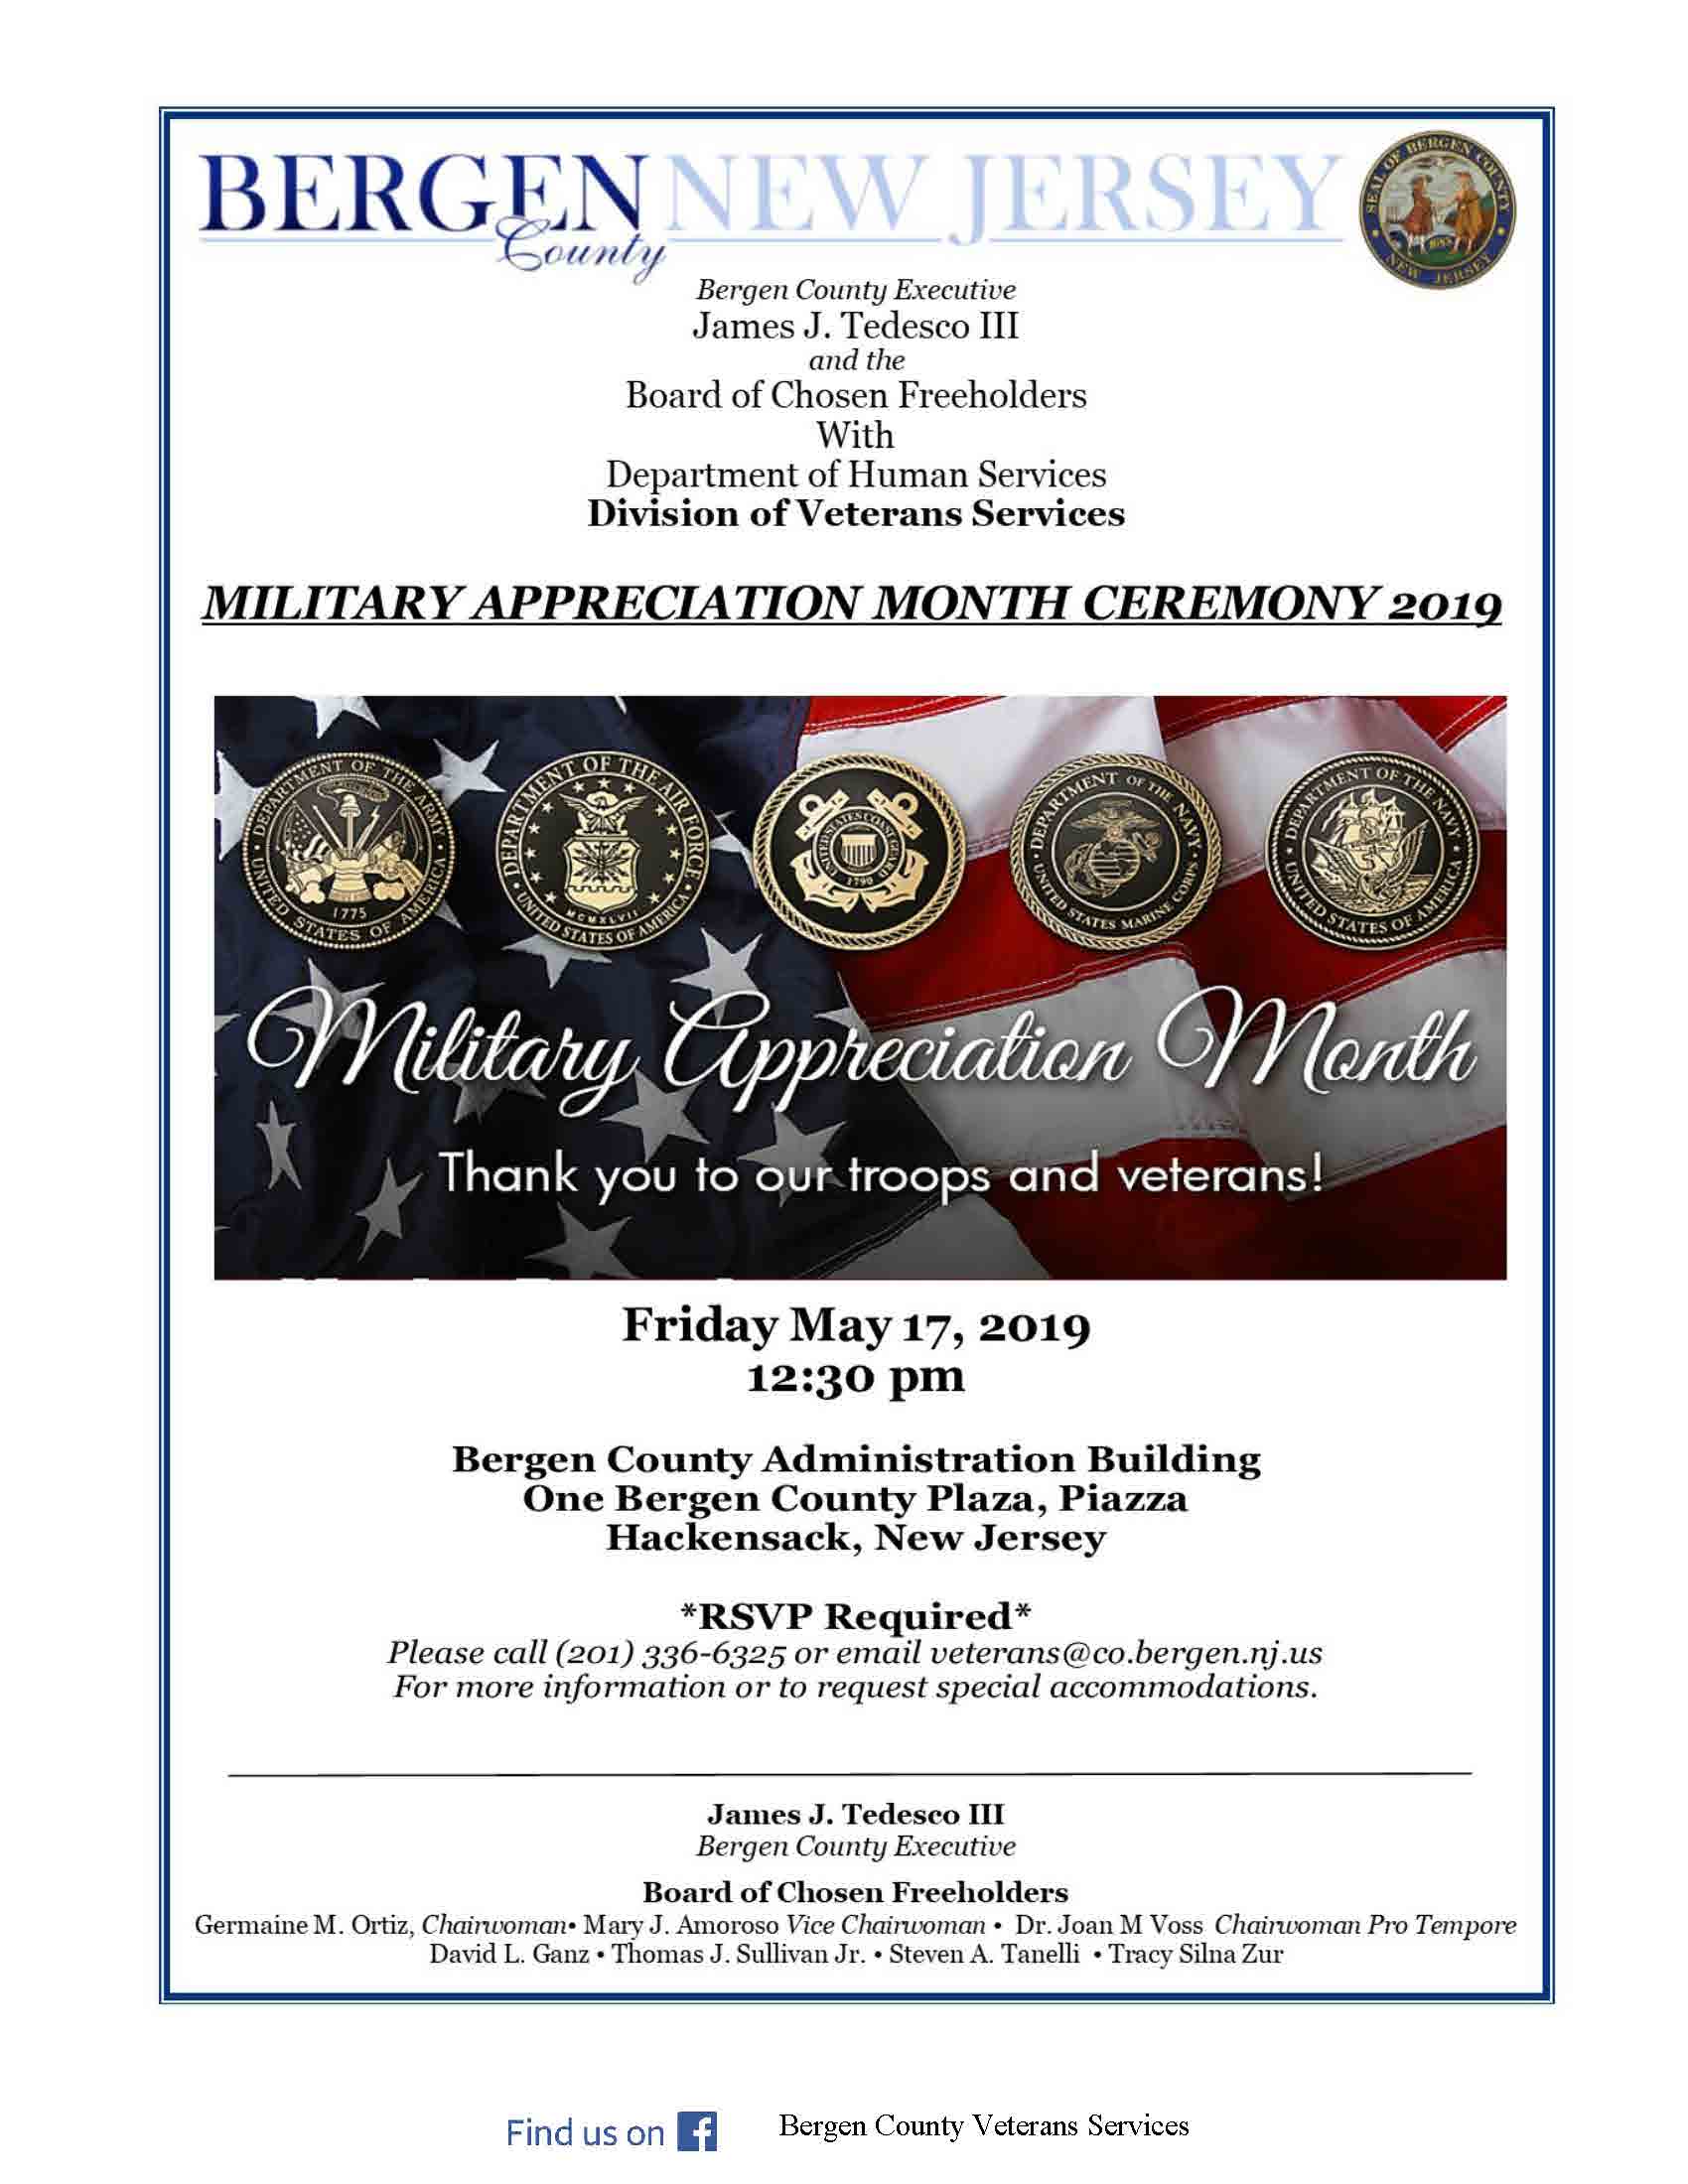 Veterans appreciation flyer